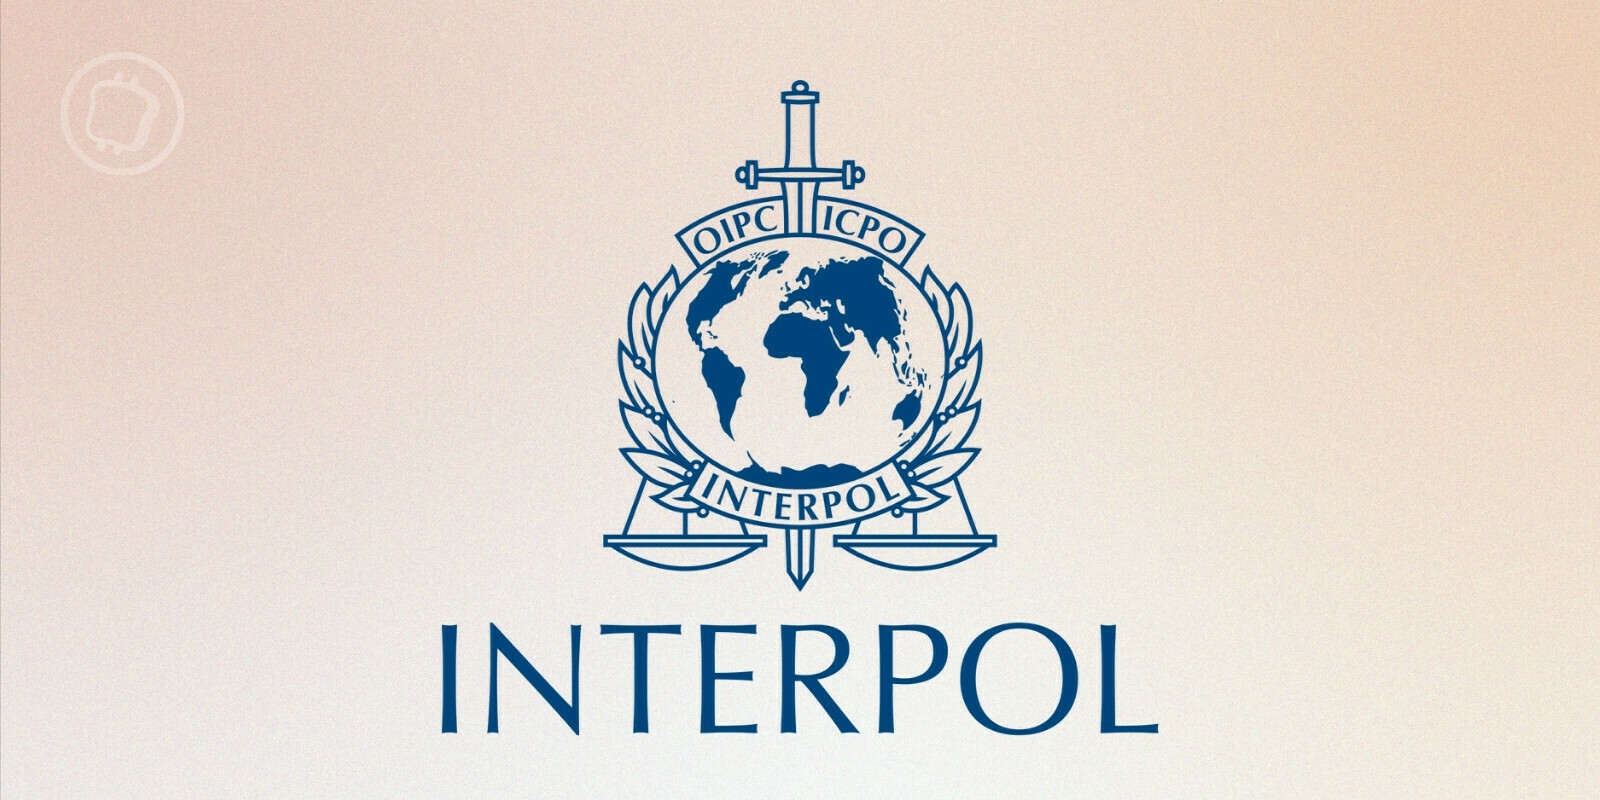 Son Dakika; INTERPOL ve AFRIPOL’ün İnsan Kaçakçılığı ve Göçmen Kaçakçılığına Karşı İlk Ortak Operasyon